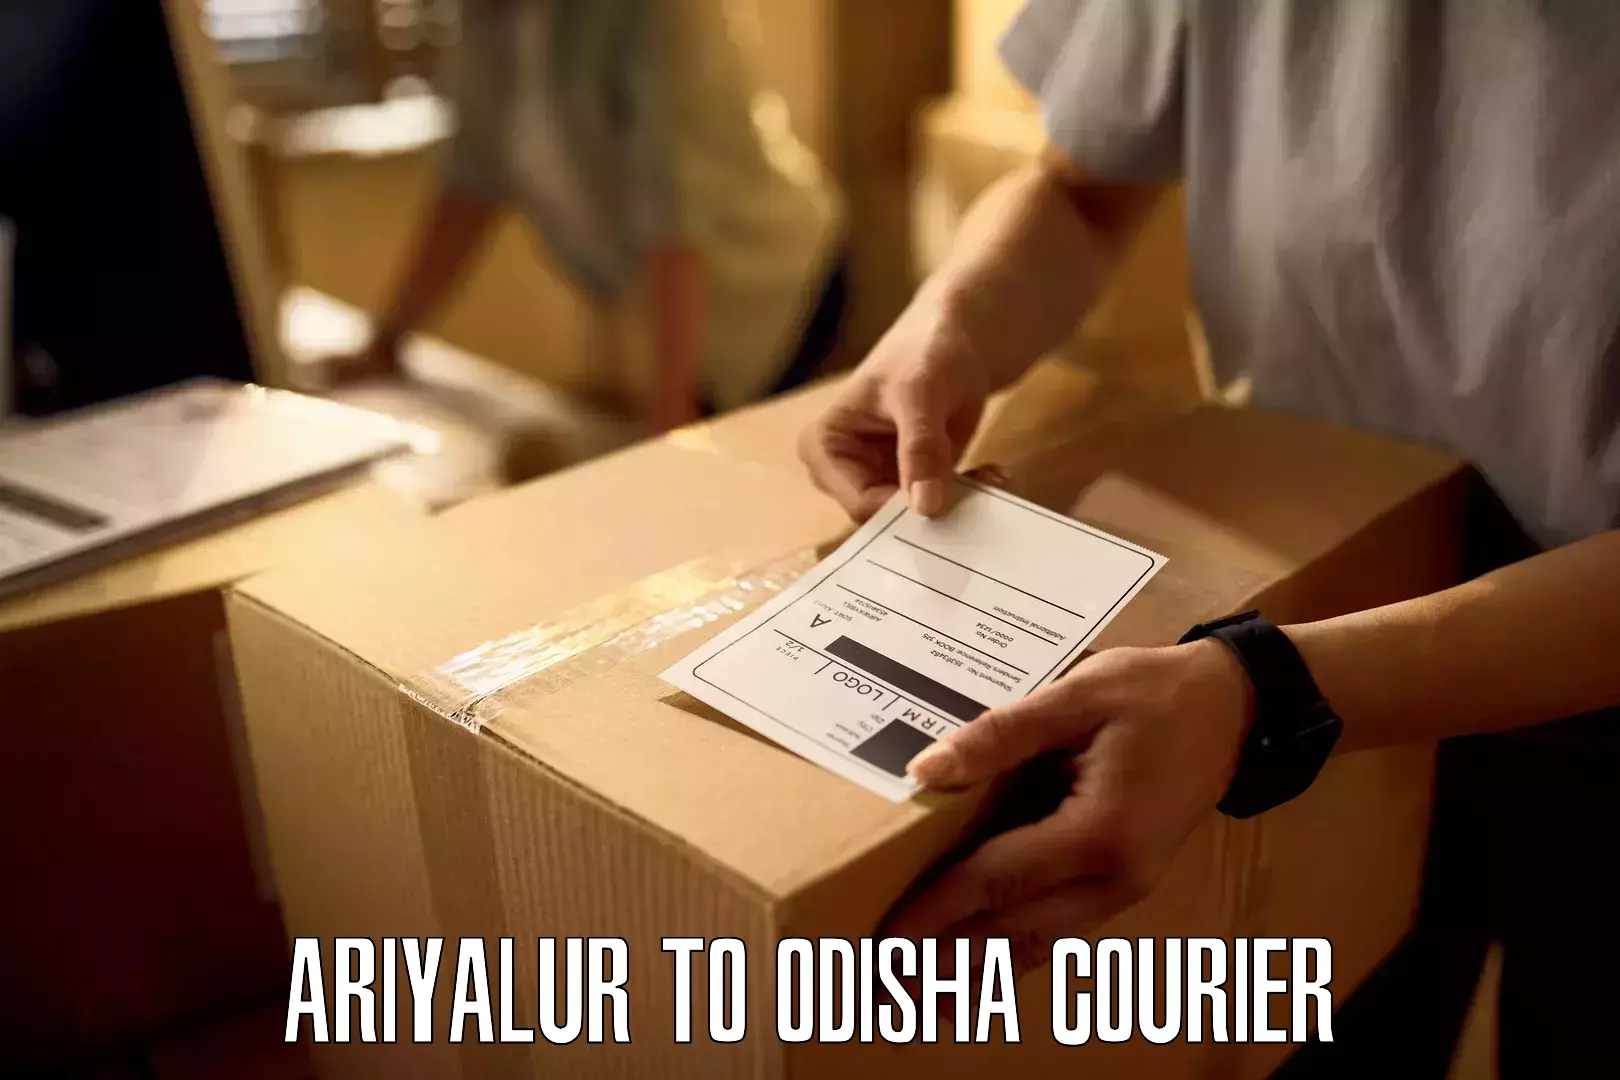 Courier service partnerships Ariyalur to Odisha